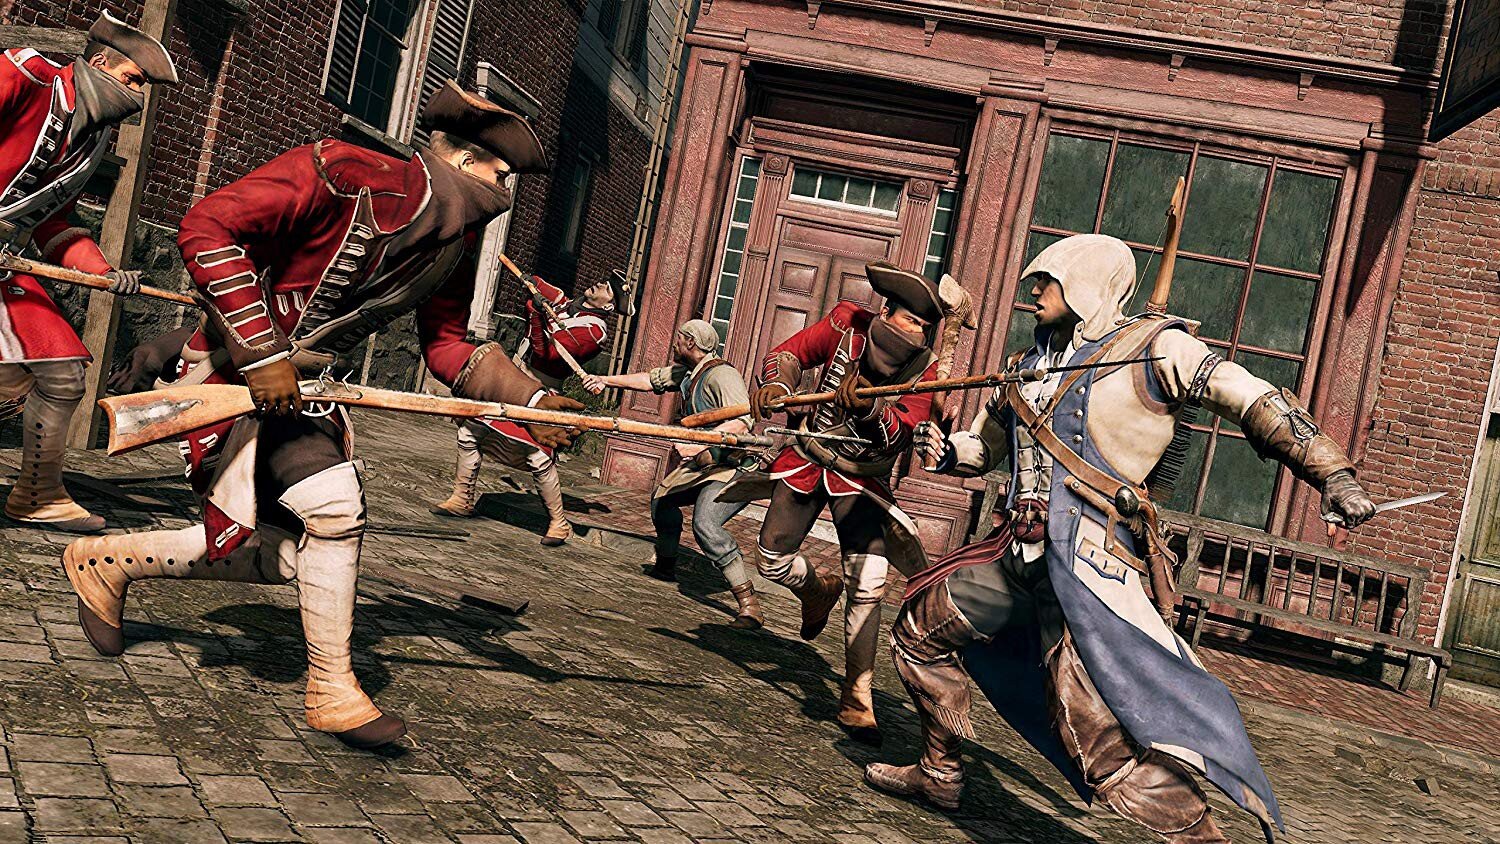 SWITCH Assassin's Creed III and Liberation Remastered kaina ir informacija | Kompiuteriniai žaidimai | pigu.lt